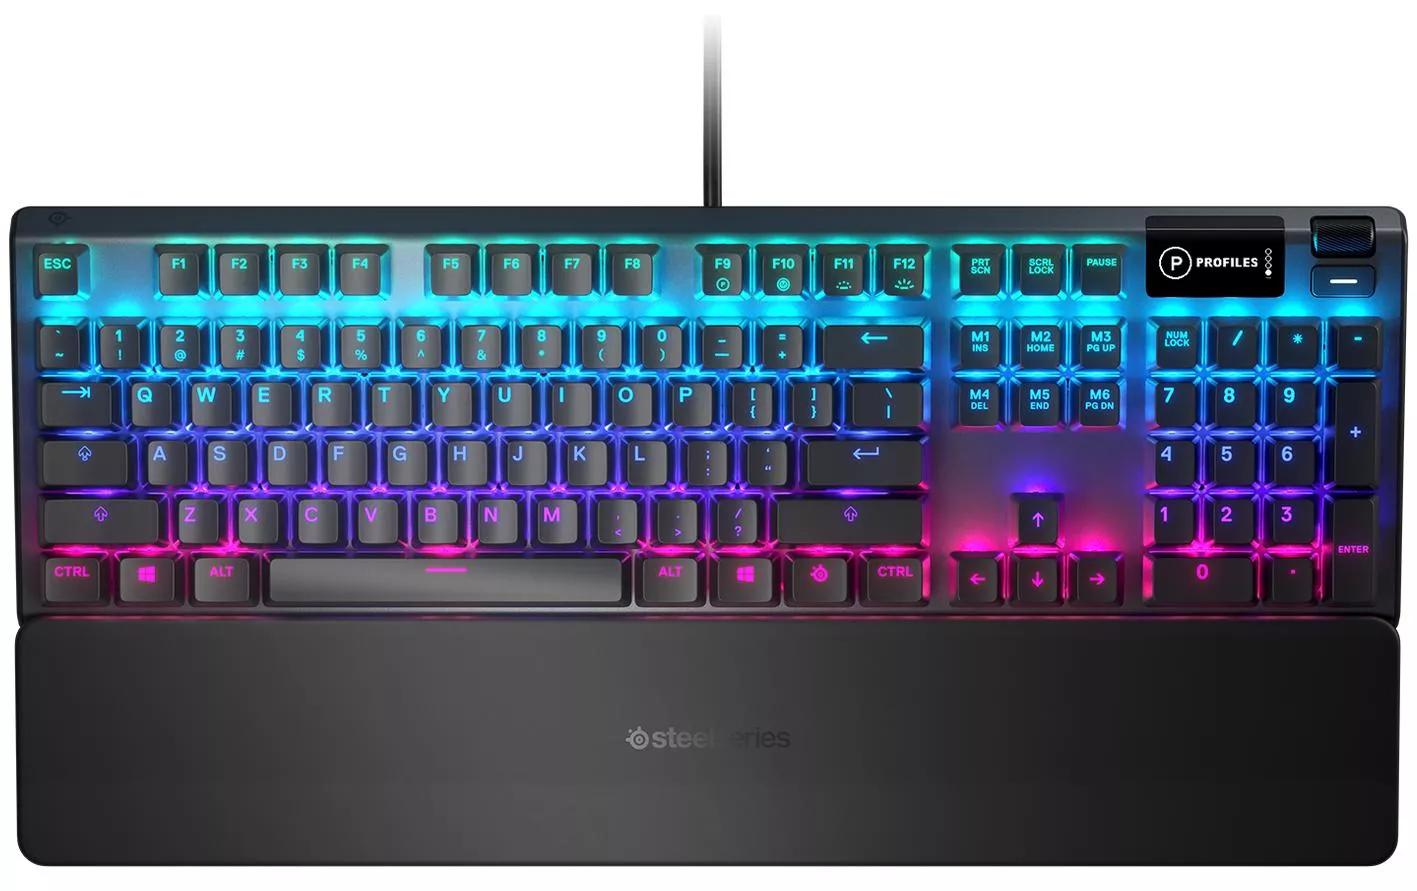 Serie Steel Gaming Keyboard Apex 5